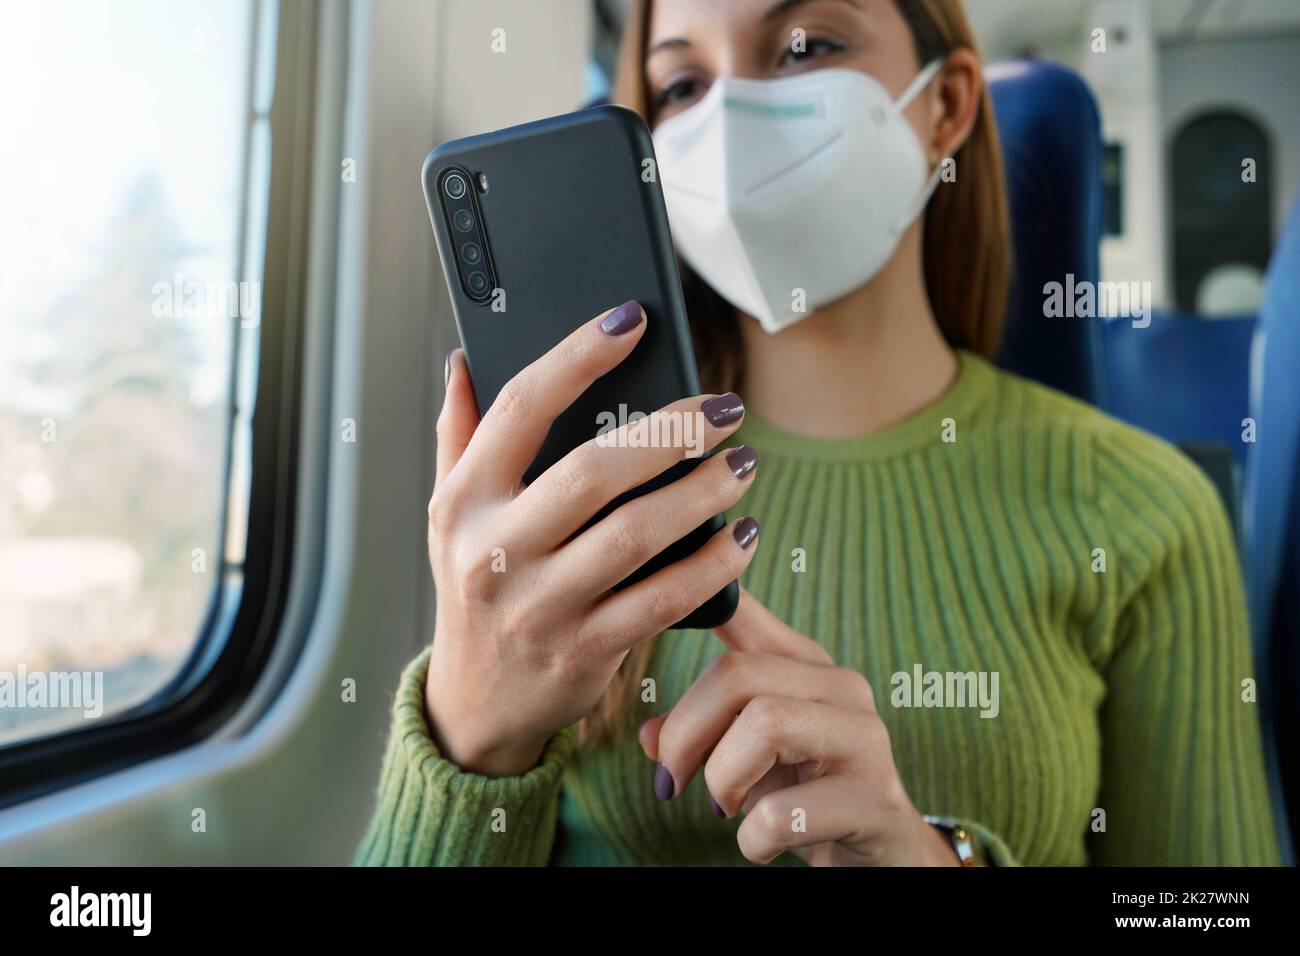 Formez le passager à l'aide de l'application pour smartphone pendant les déplacements en portant un masque facial de protection.Concentrez-vous sur le téléphone. Banque D'Images